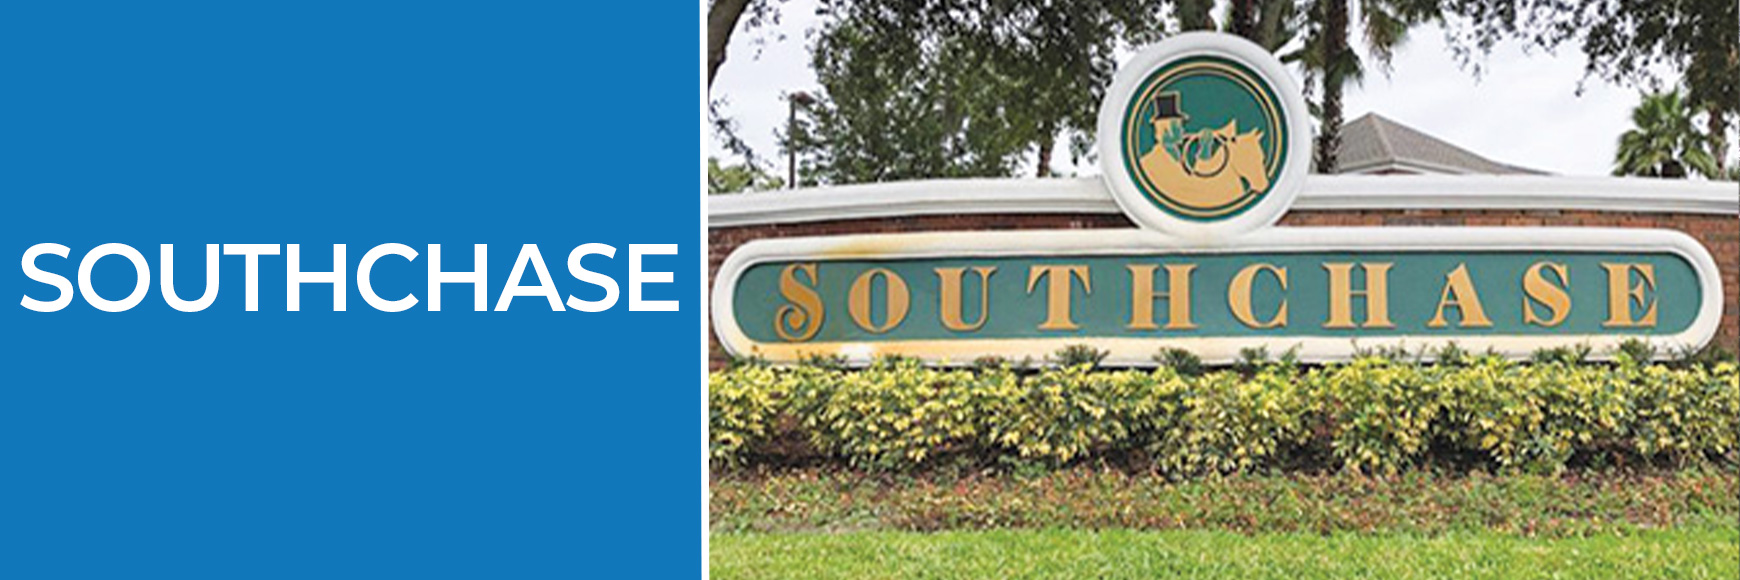 Imóveis em Southchase -Orlando Homes Sales-Comunidades de Orlando